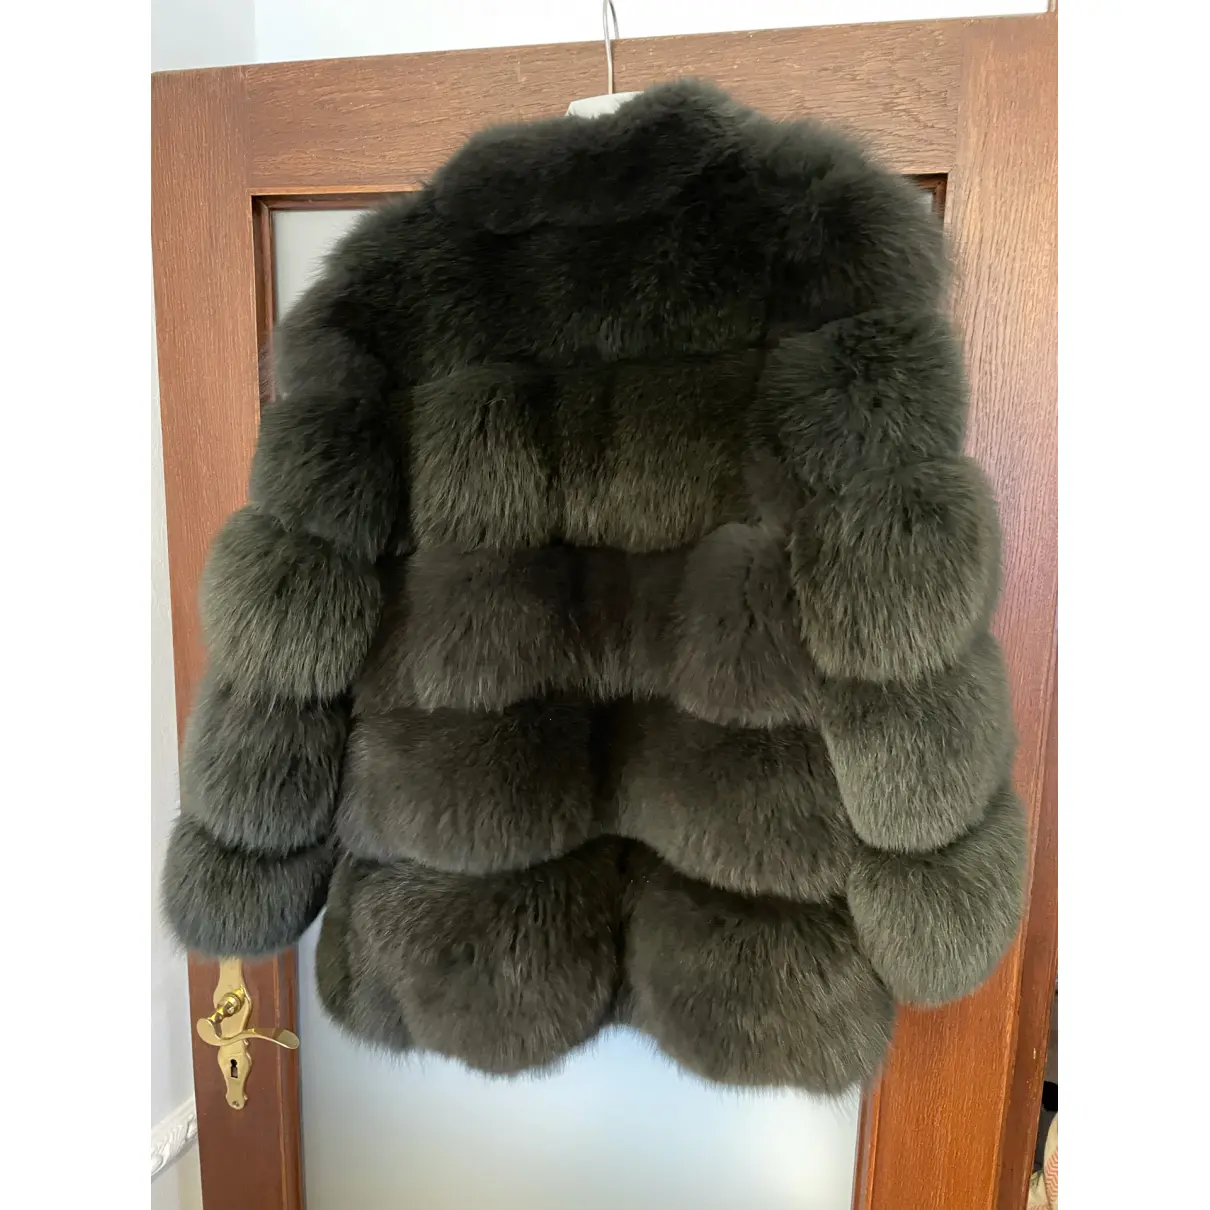 Buy Ducie Fox coat online